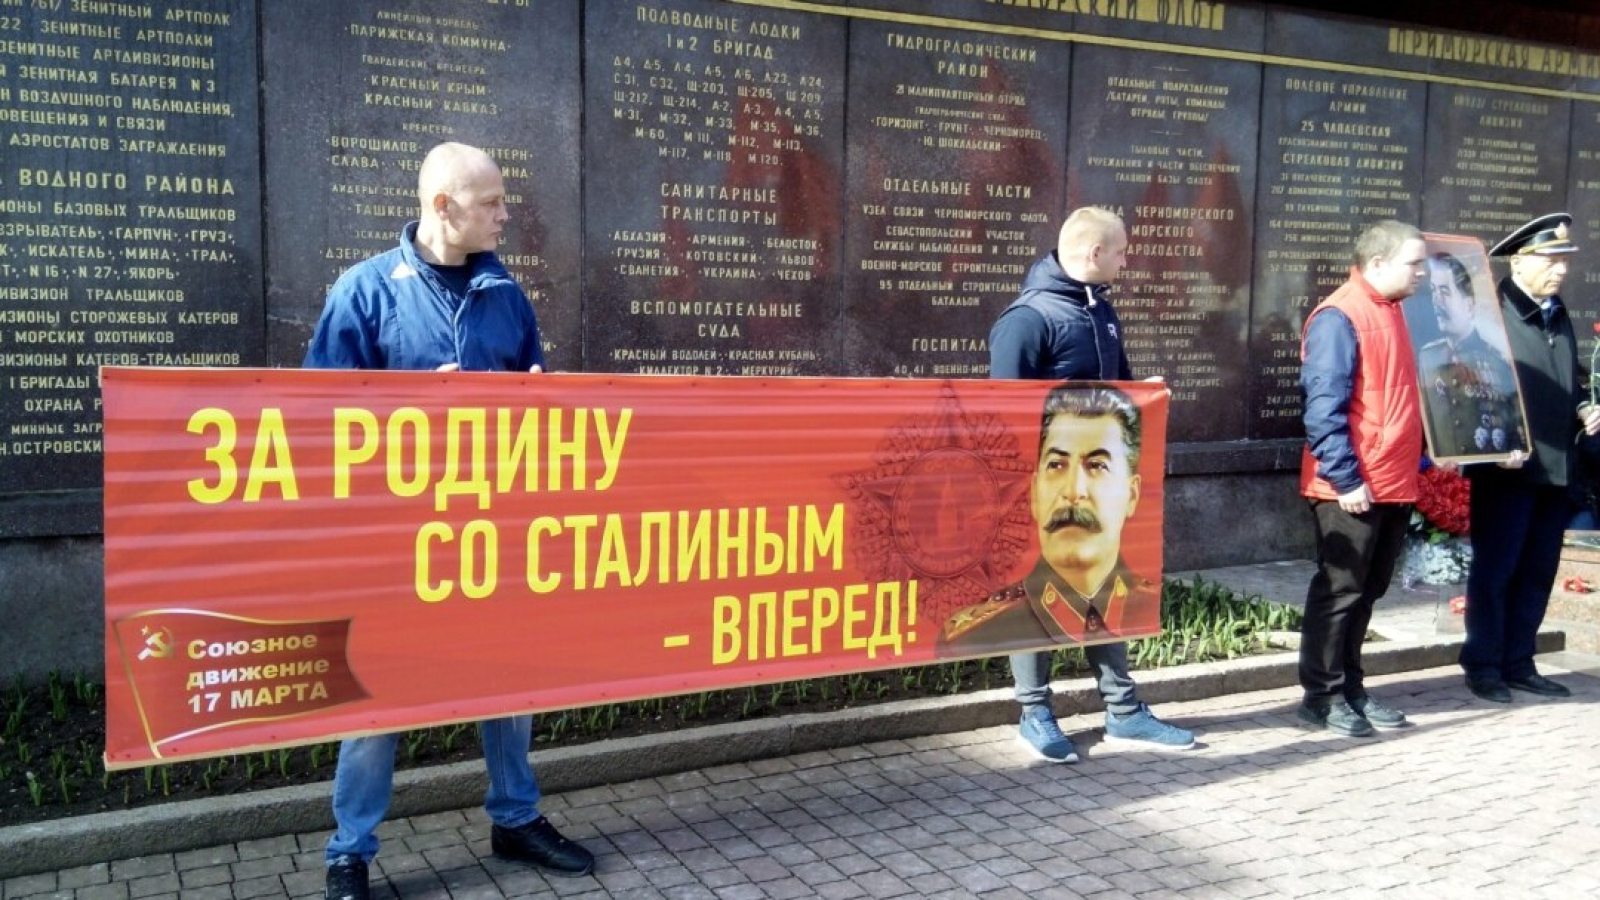 Коммунистическому активисту, который вёл группу «Верните Сталина», грозит 15 лет за анекдот